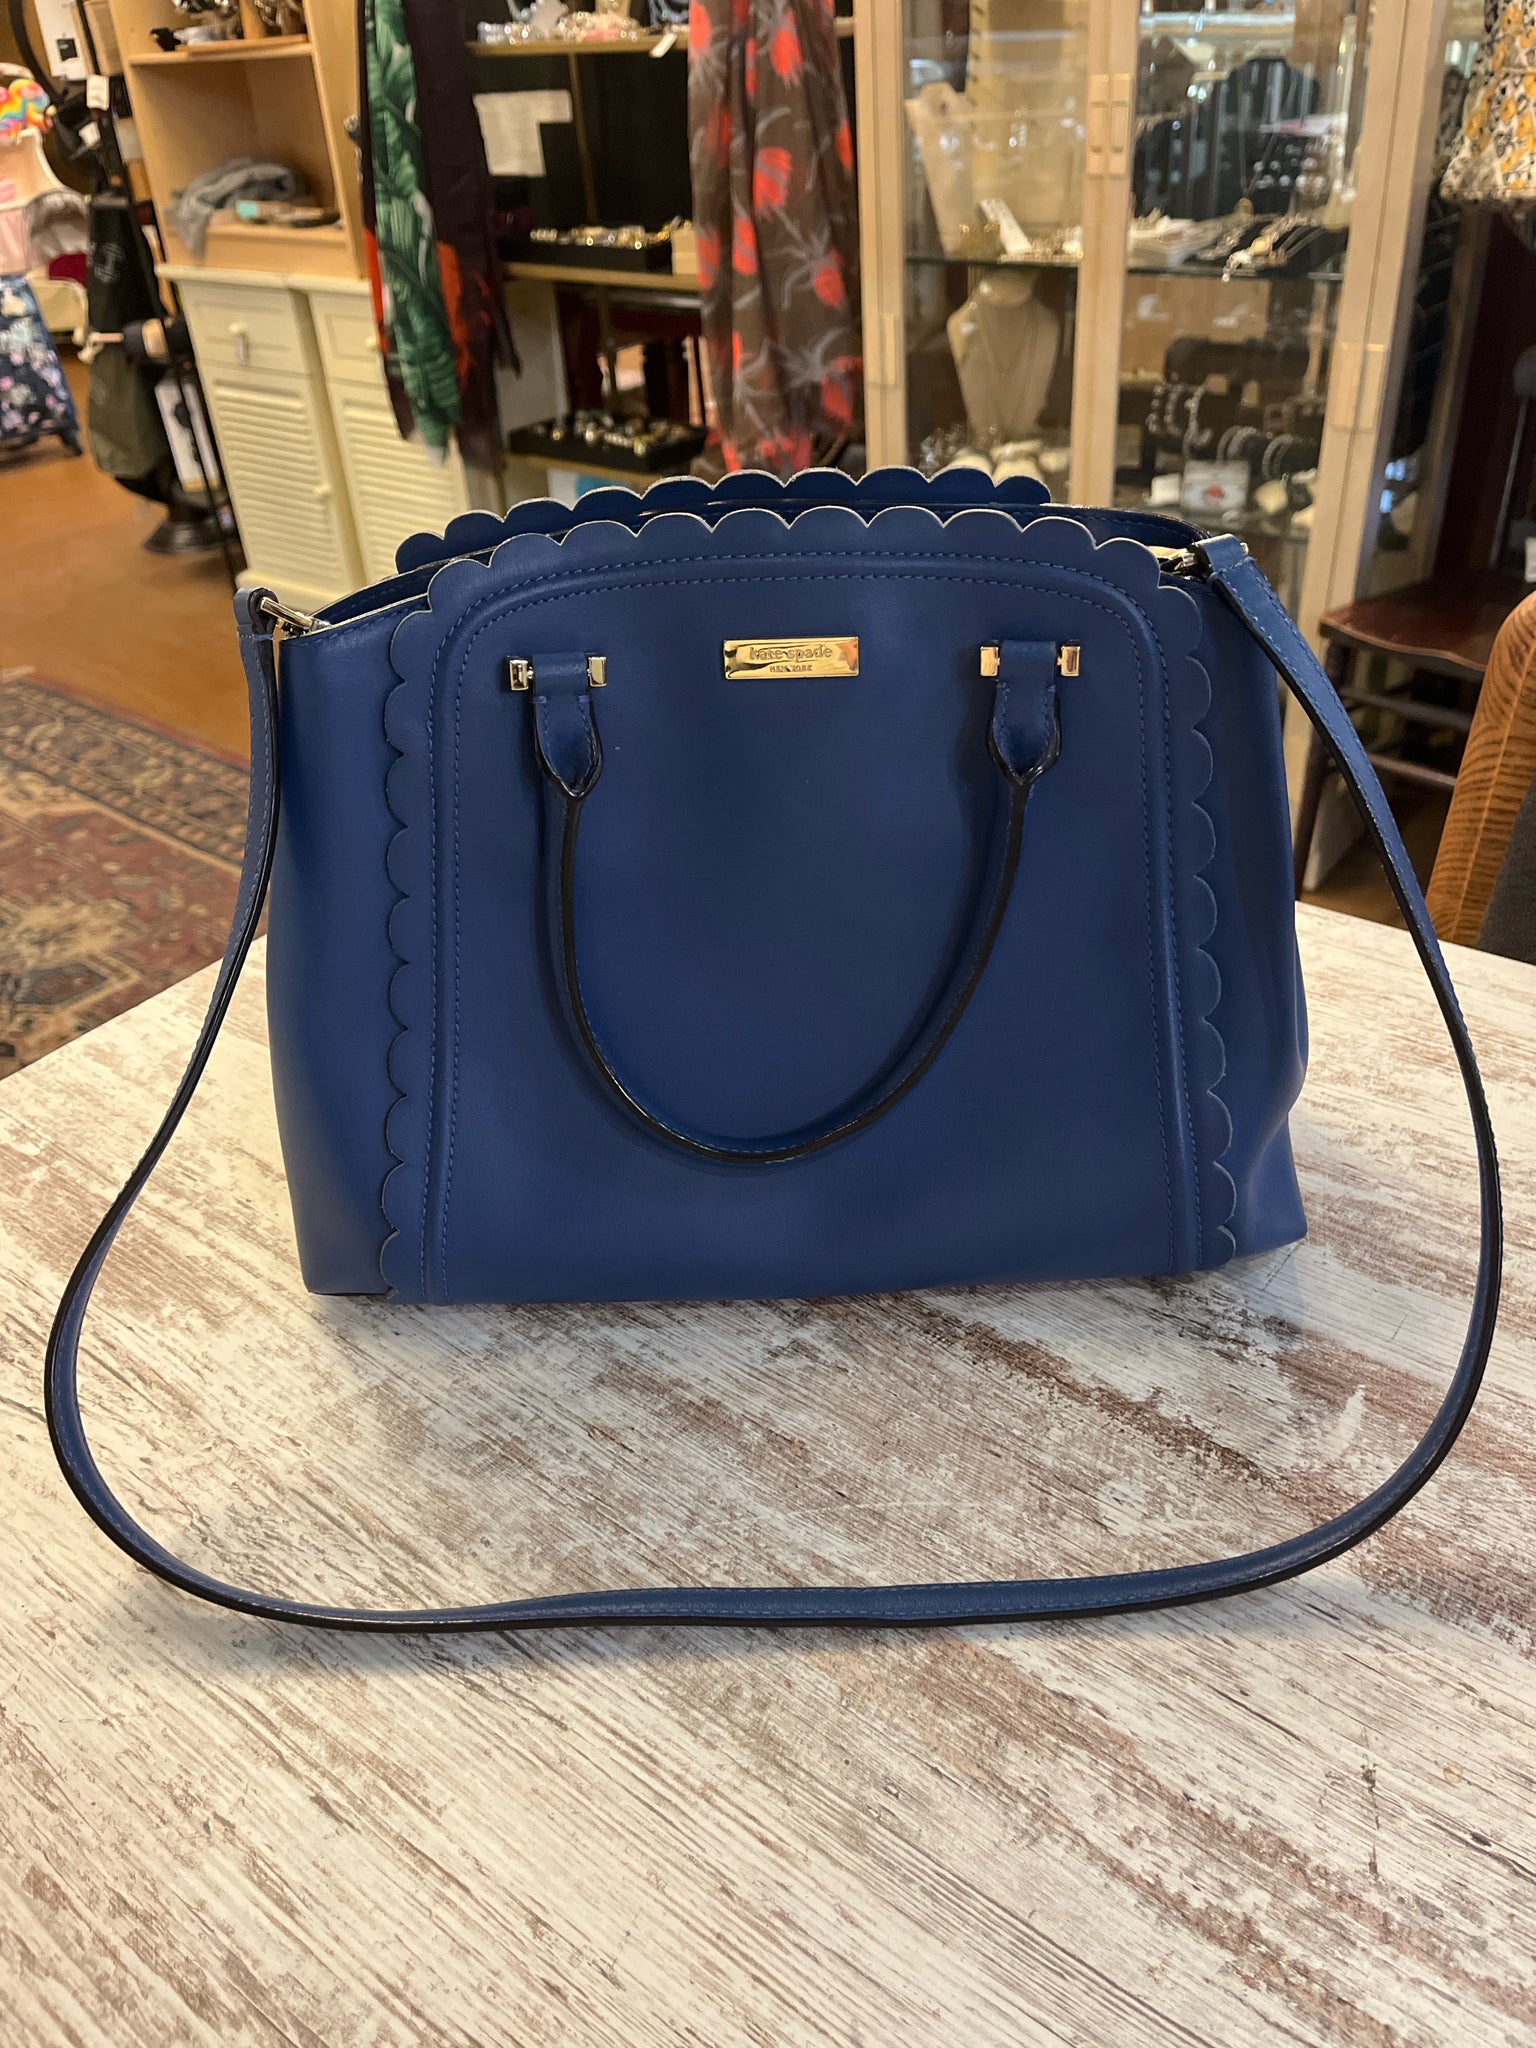 Kate Spade Blue Ruffle Handbag